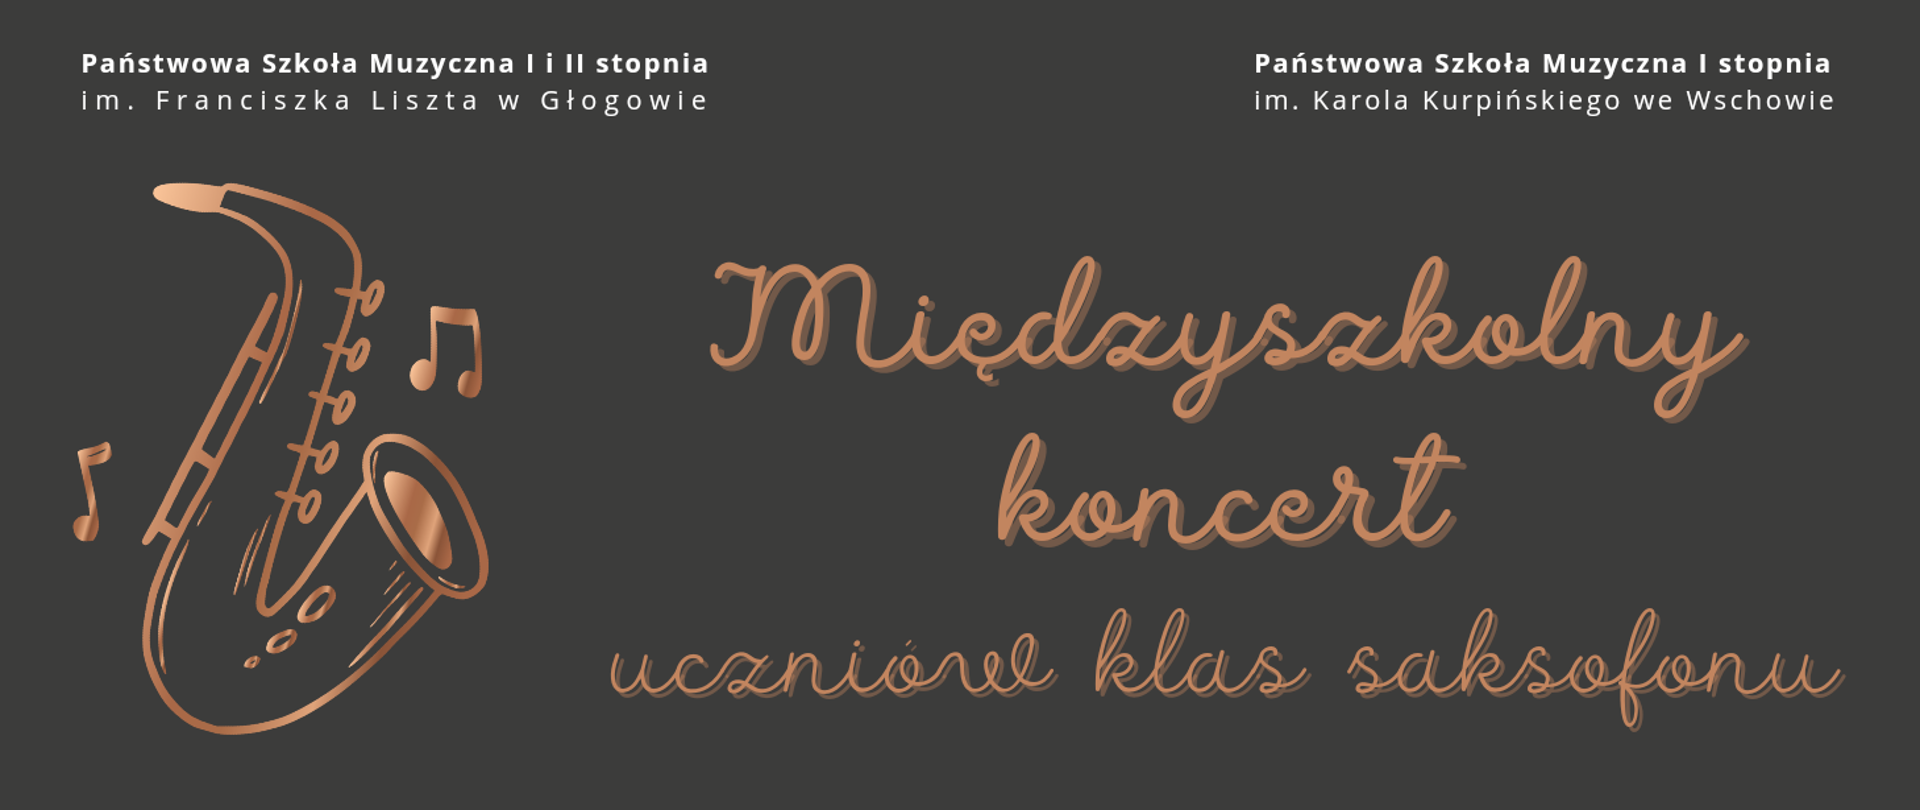 W górnej części nazwy dwóch szkół: z lewej PSM z Głogowa, z prawej PSM ze Wschowy. Na pozostałej części tytuł koncertu oraz rysunek saksofonu z lewej strony.